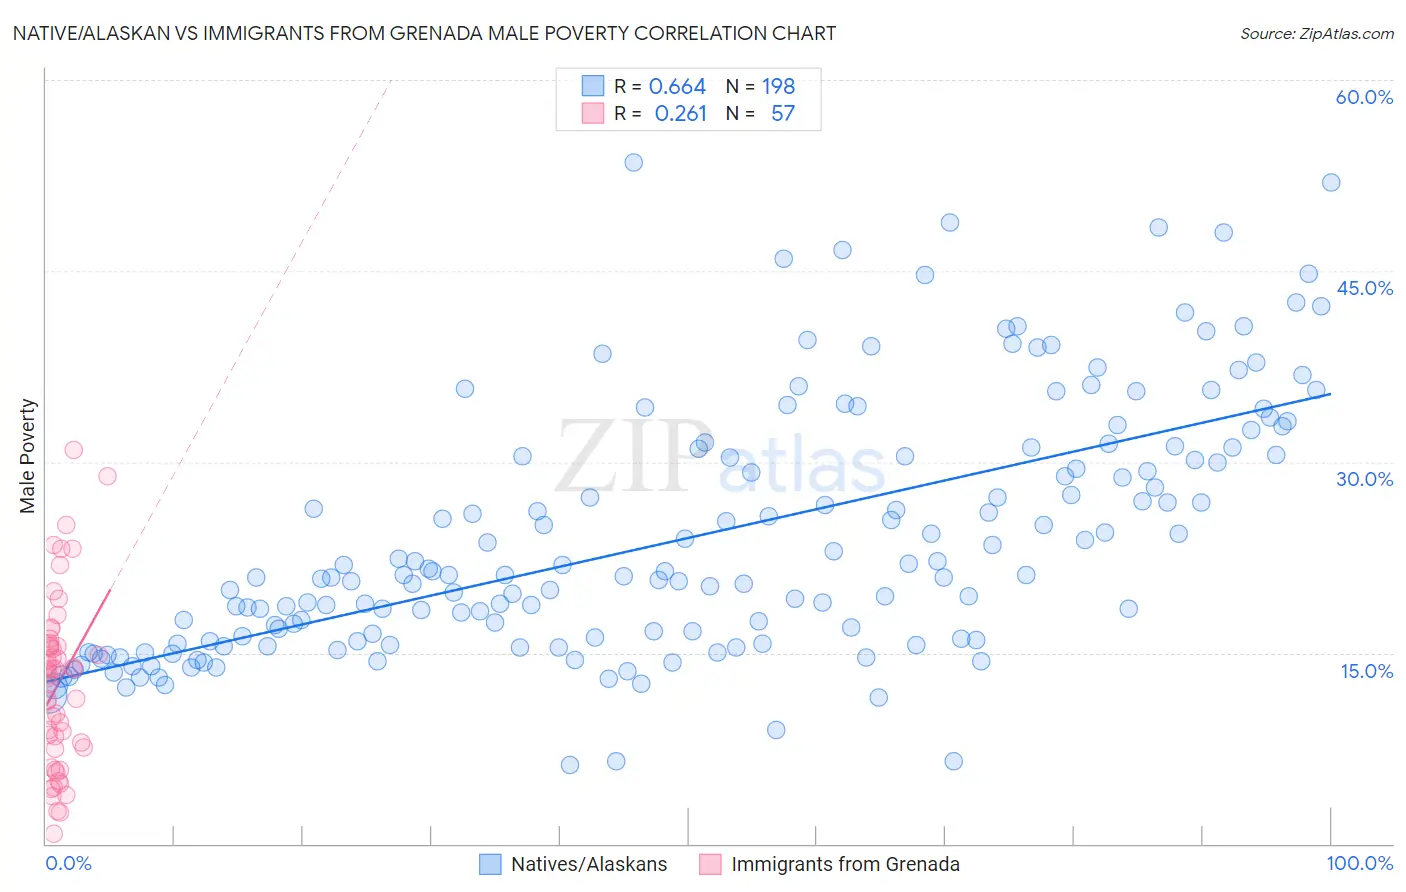 Native/Alaskan vs Immigrants from Grenada Male Poverty